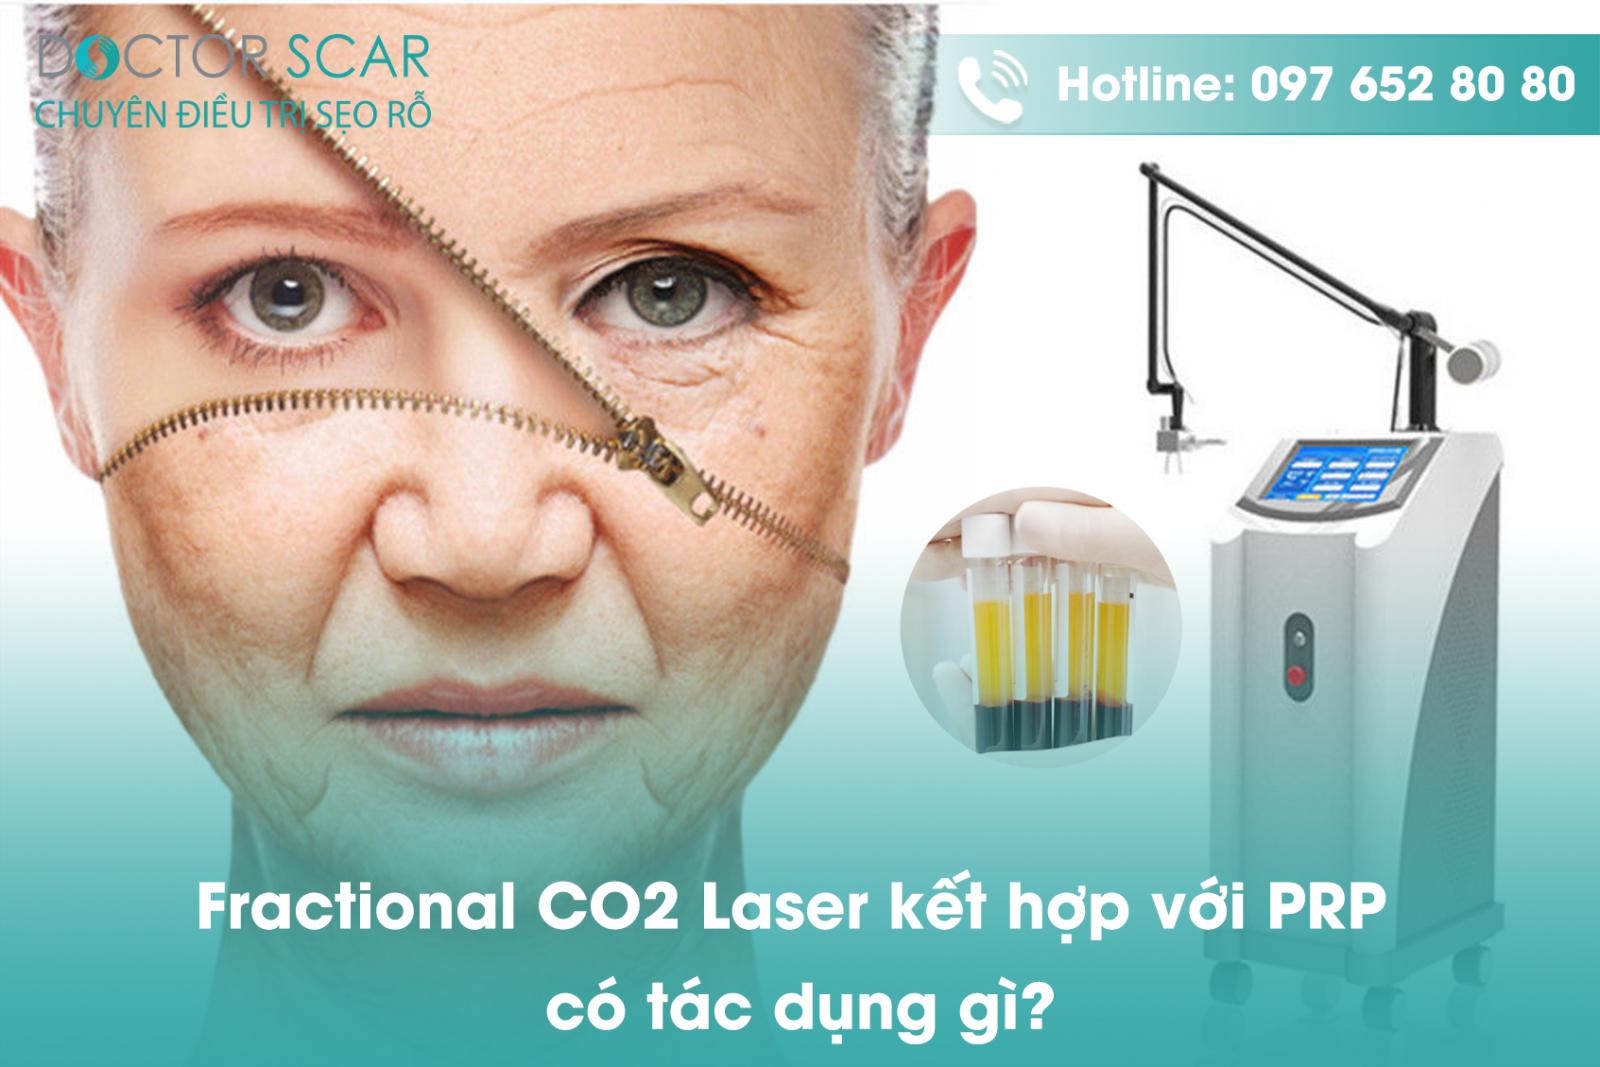 Fractional CO2 Laser kết hợp với PRP có tác dụng gì?